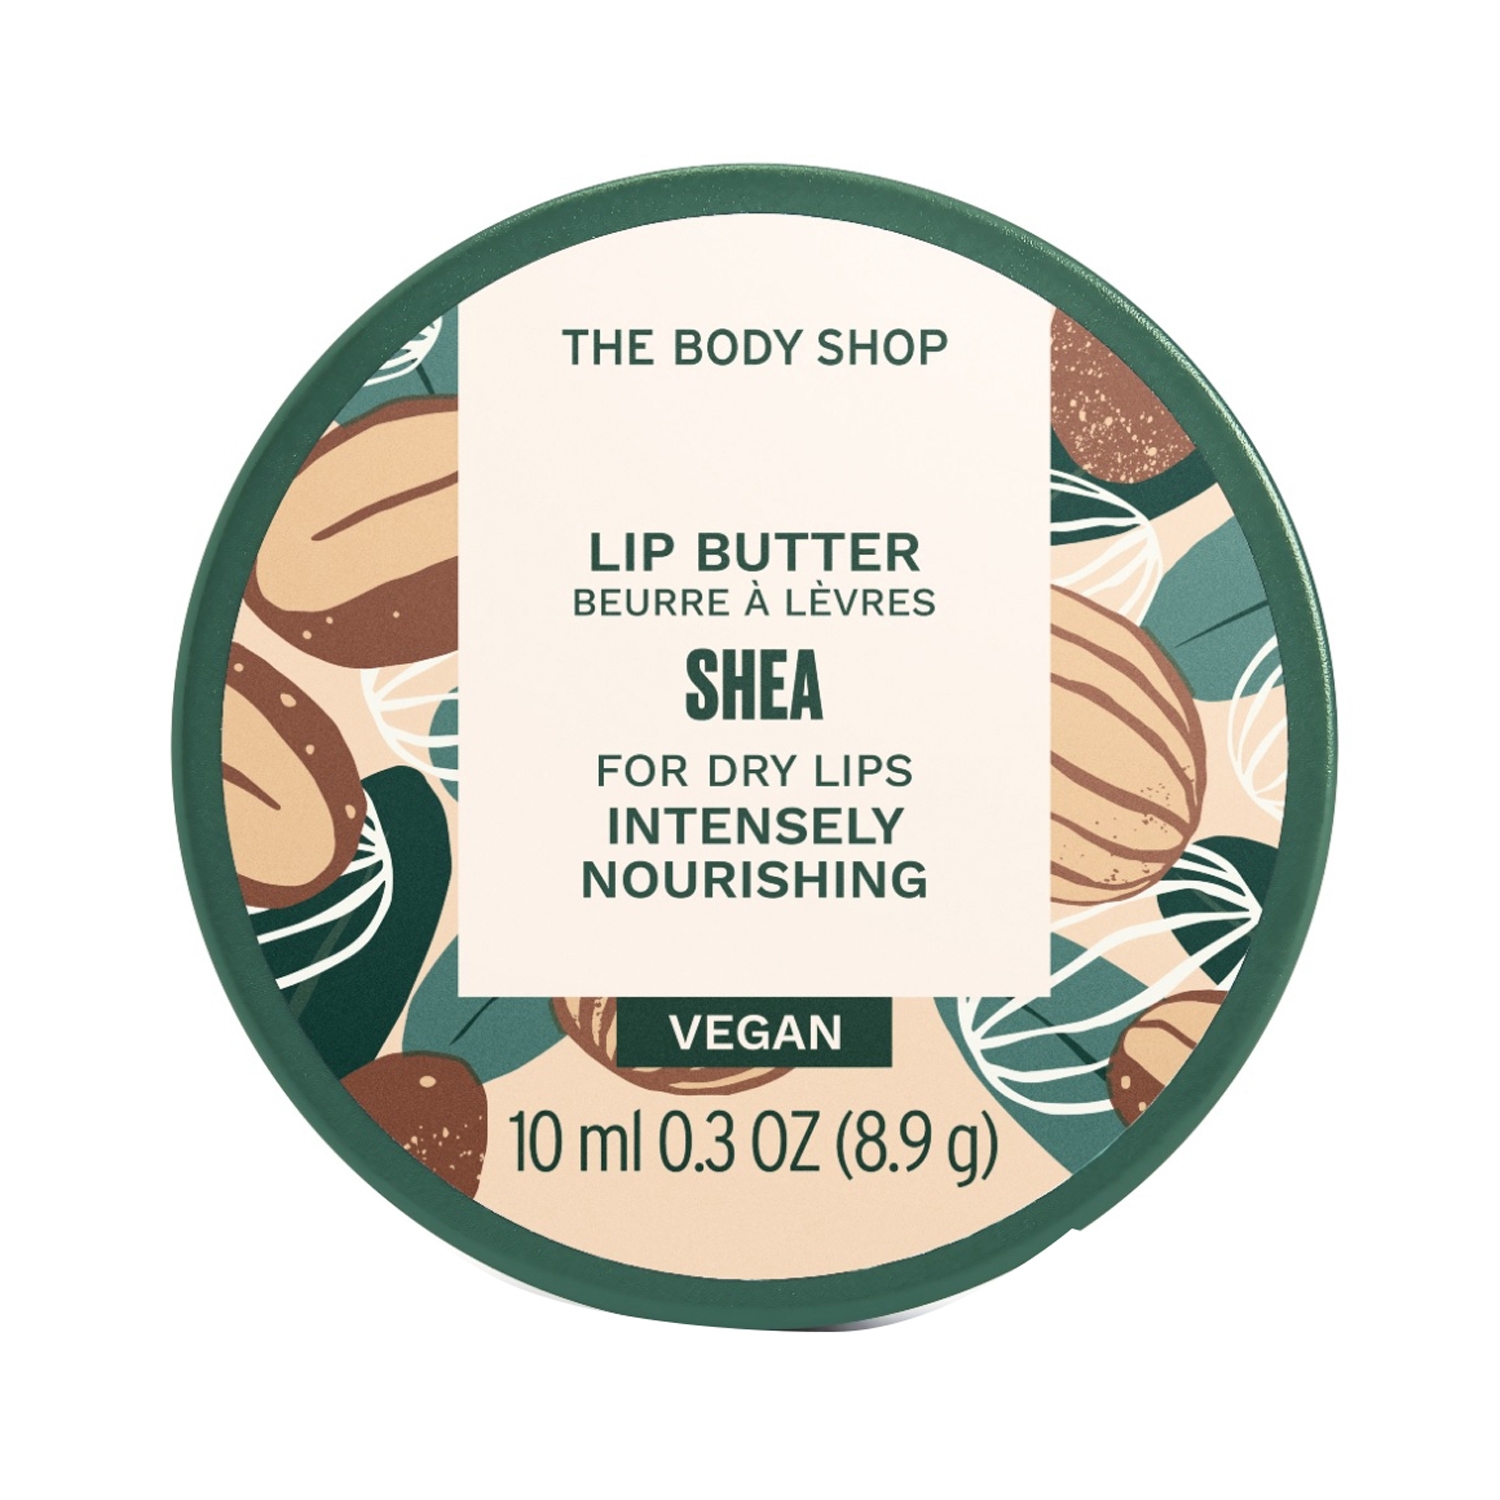 The Body Shop | The Body Shop Shea Lip Butter (10ml)